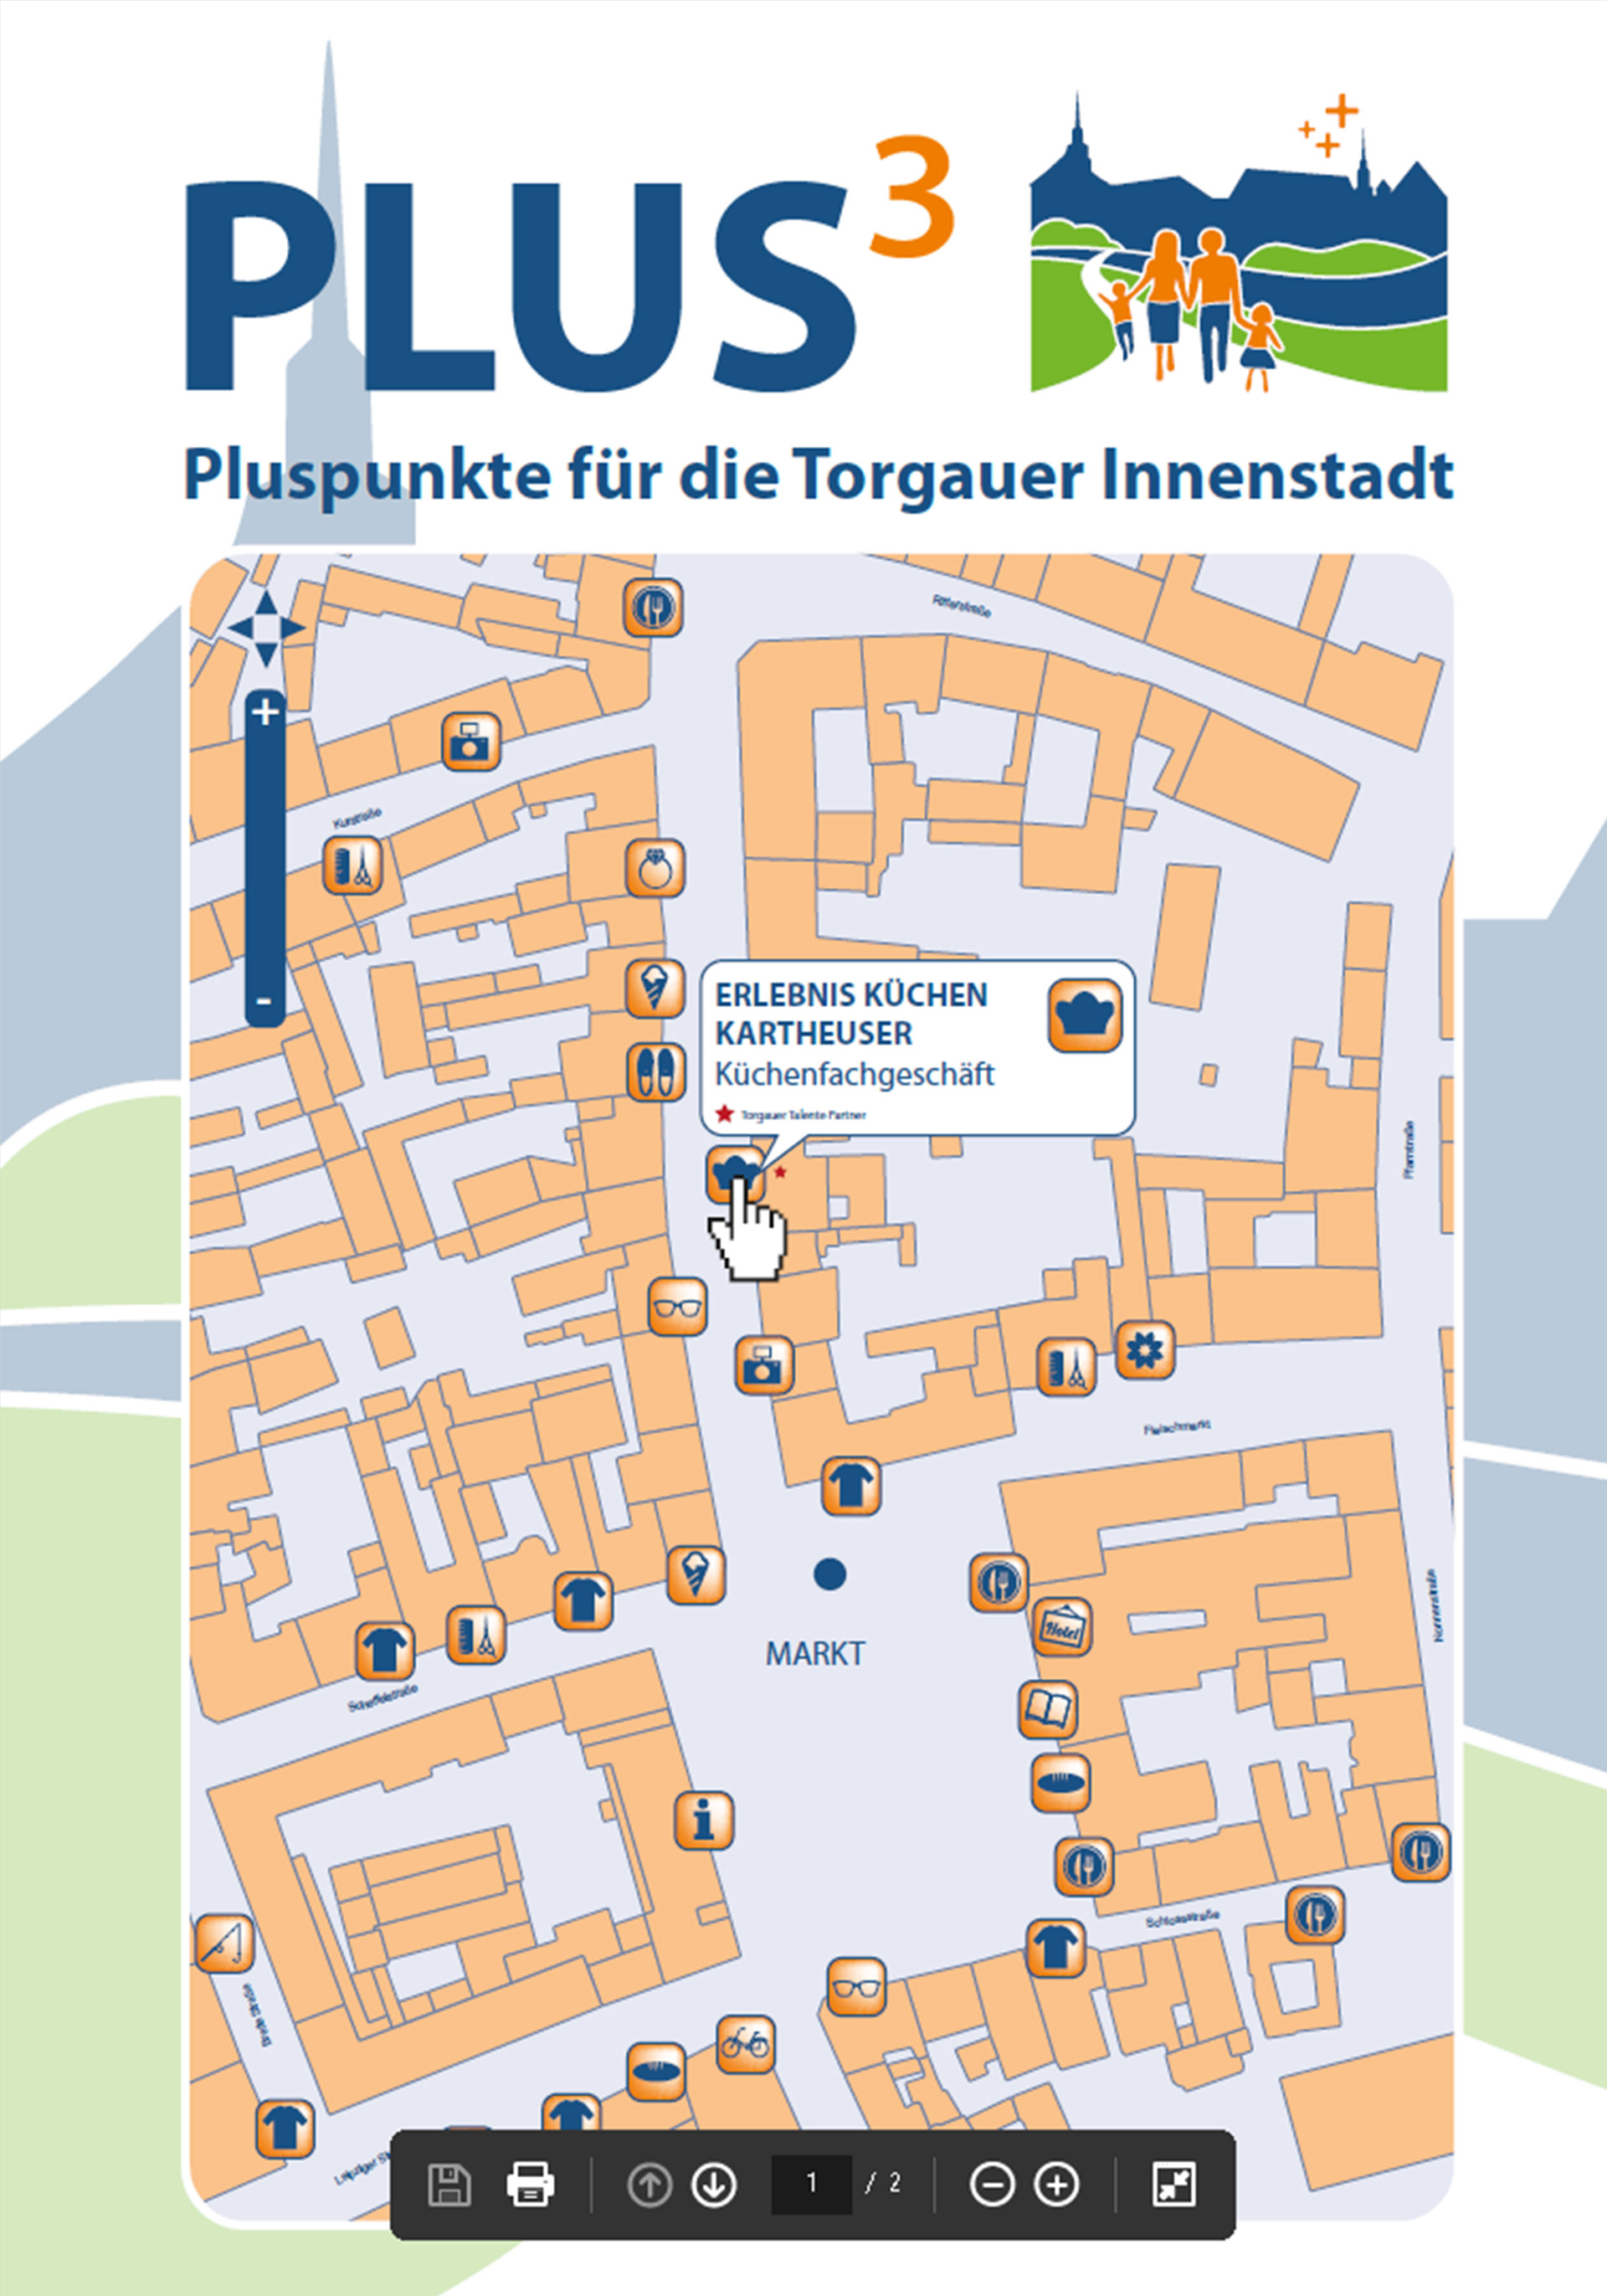 PLUS³ - Pluspunkte für die Torgauer Innenstadt